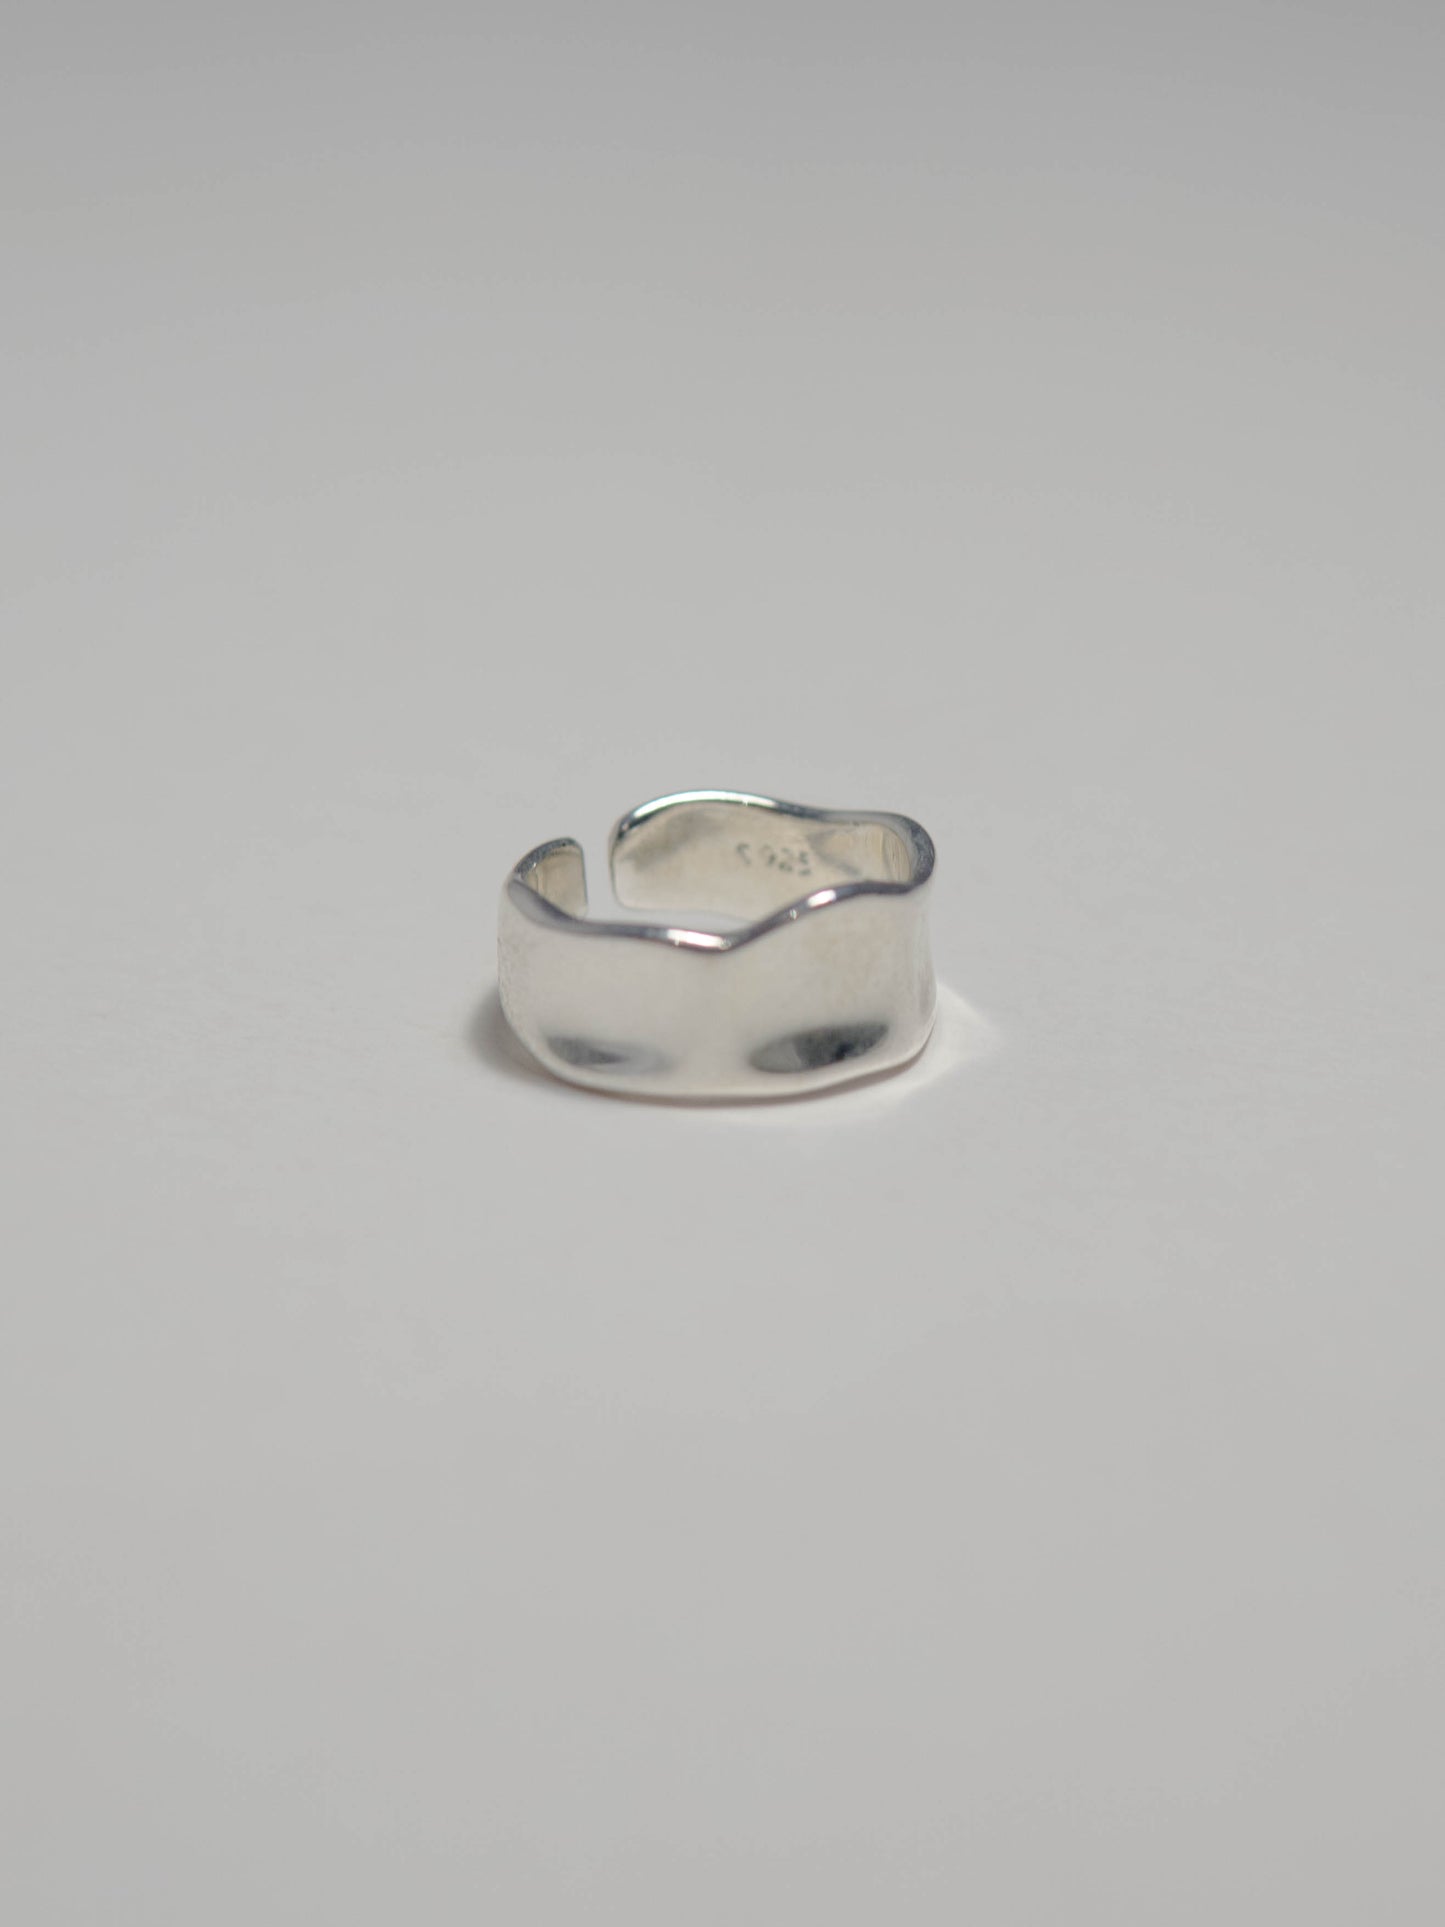 Irregular thin ring